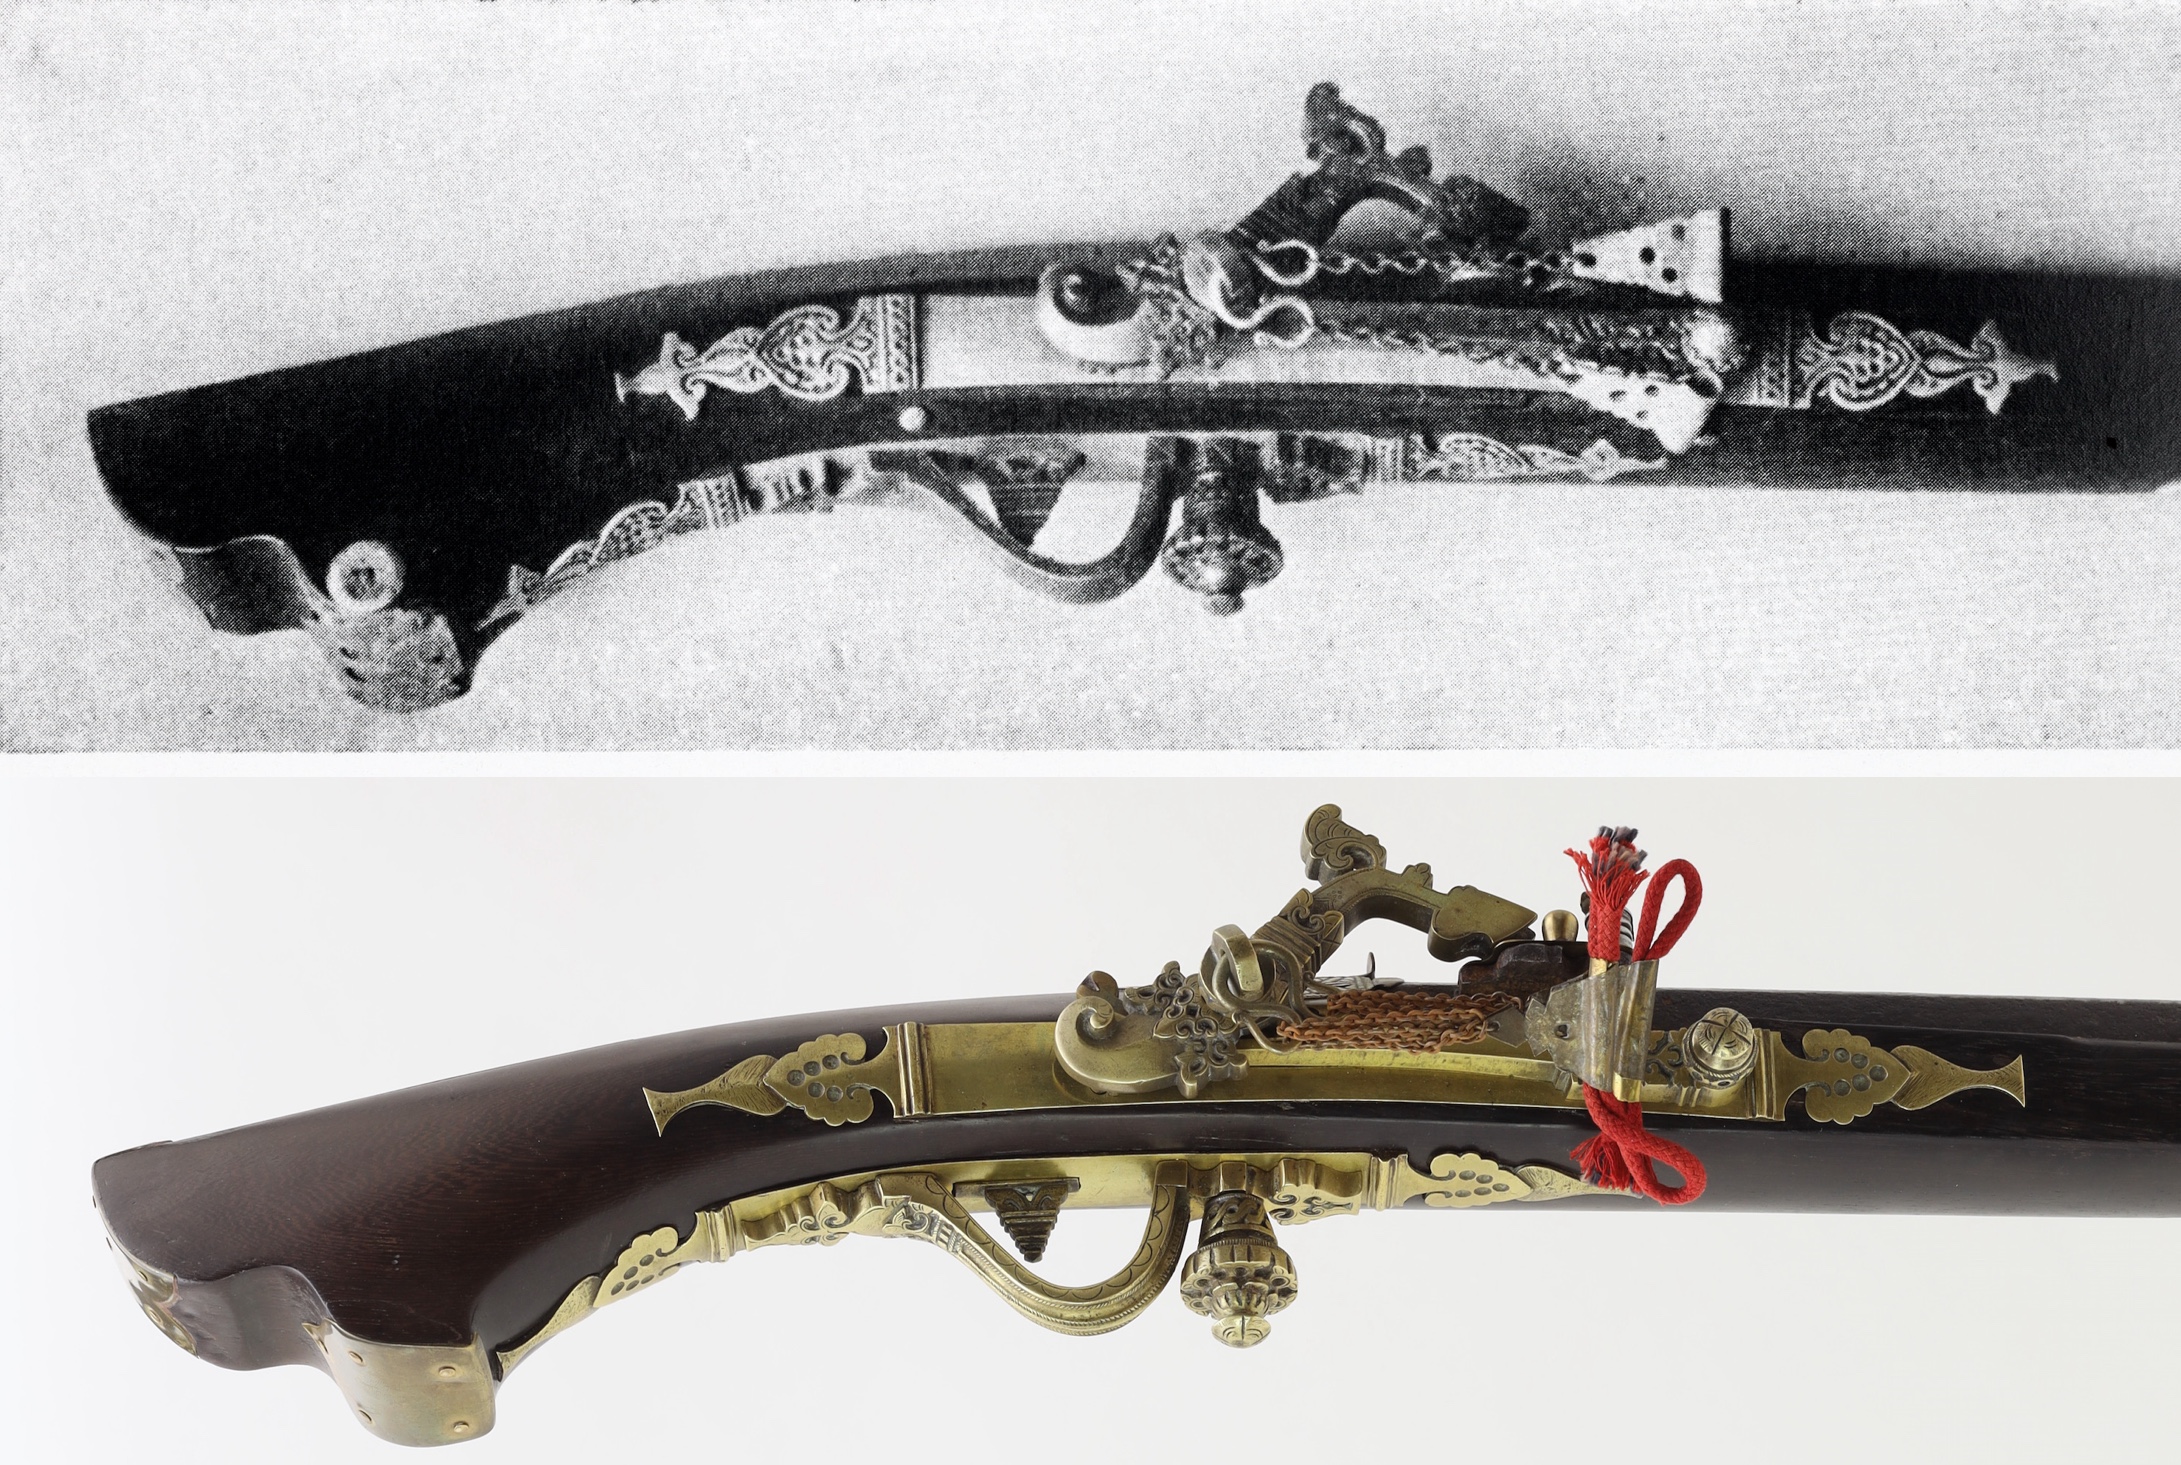 Padri guns compared